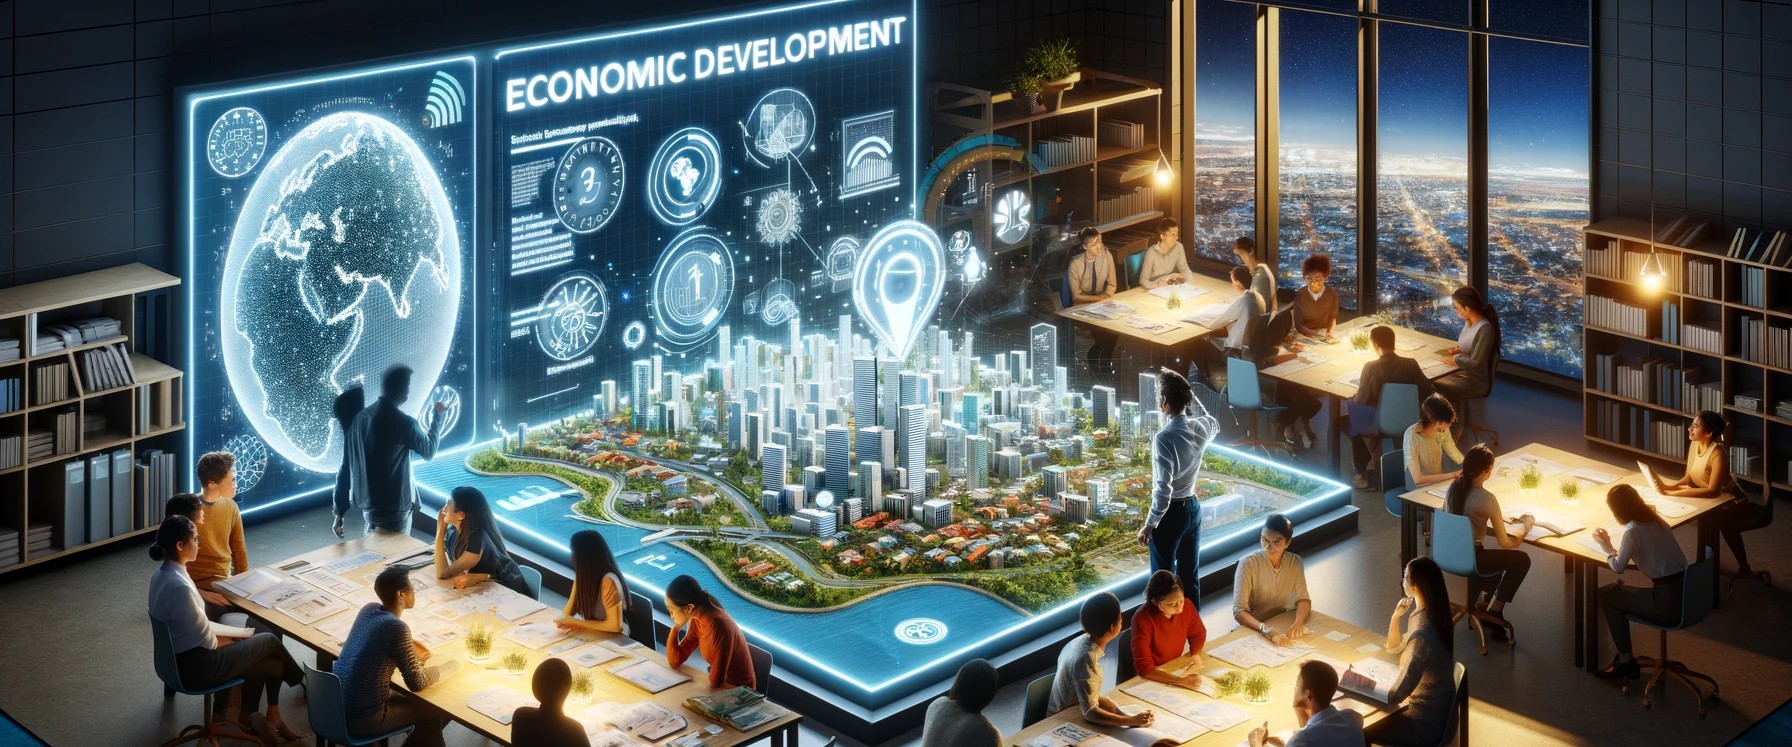 أساسيات التنمية الاقتصادية